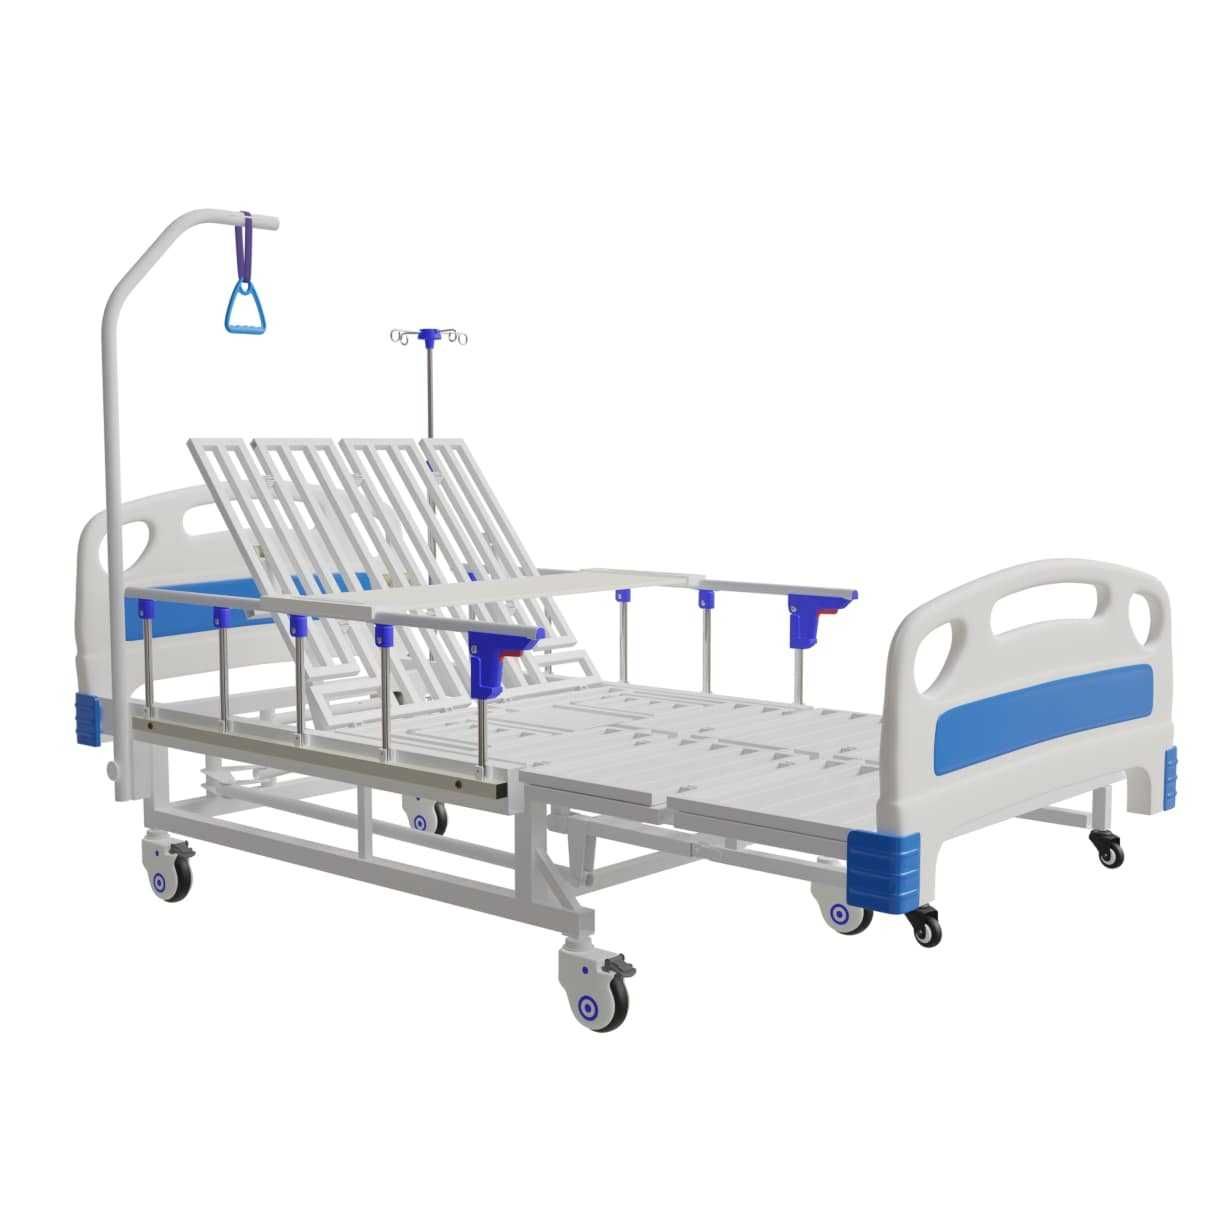 Механическая медицинская кровать для домашнего использования.